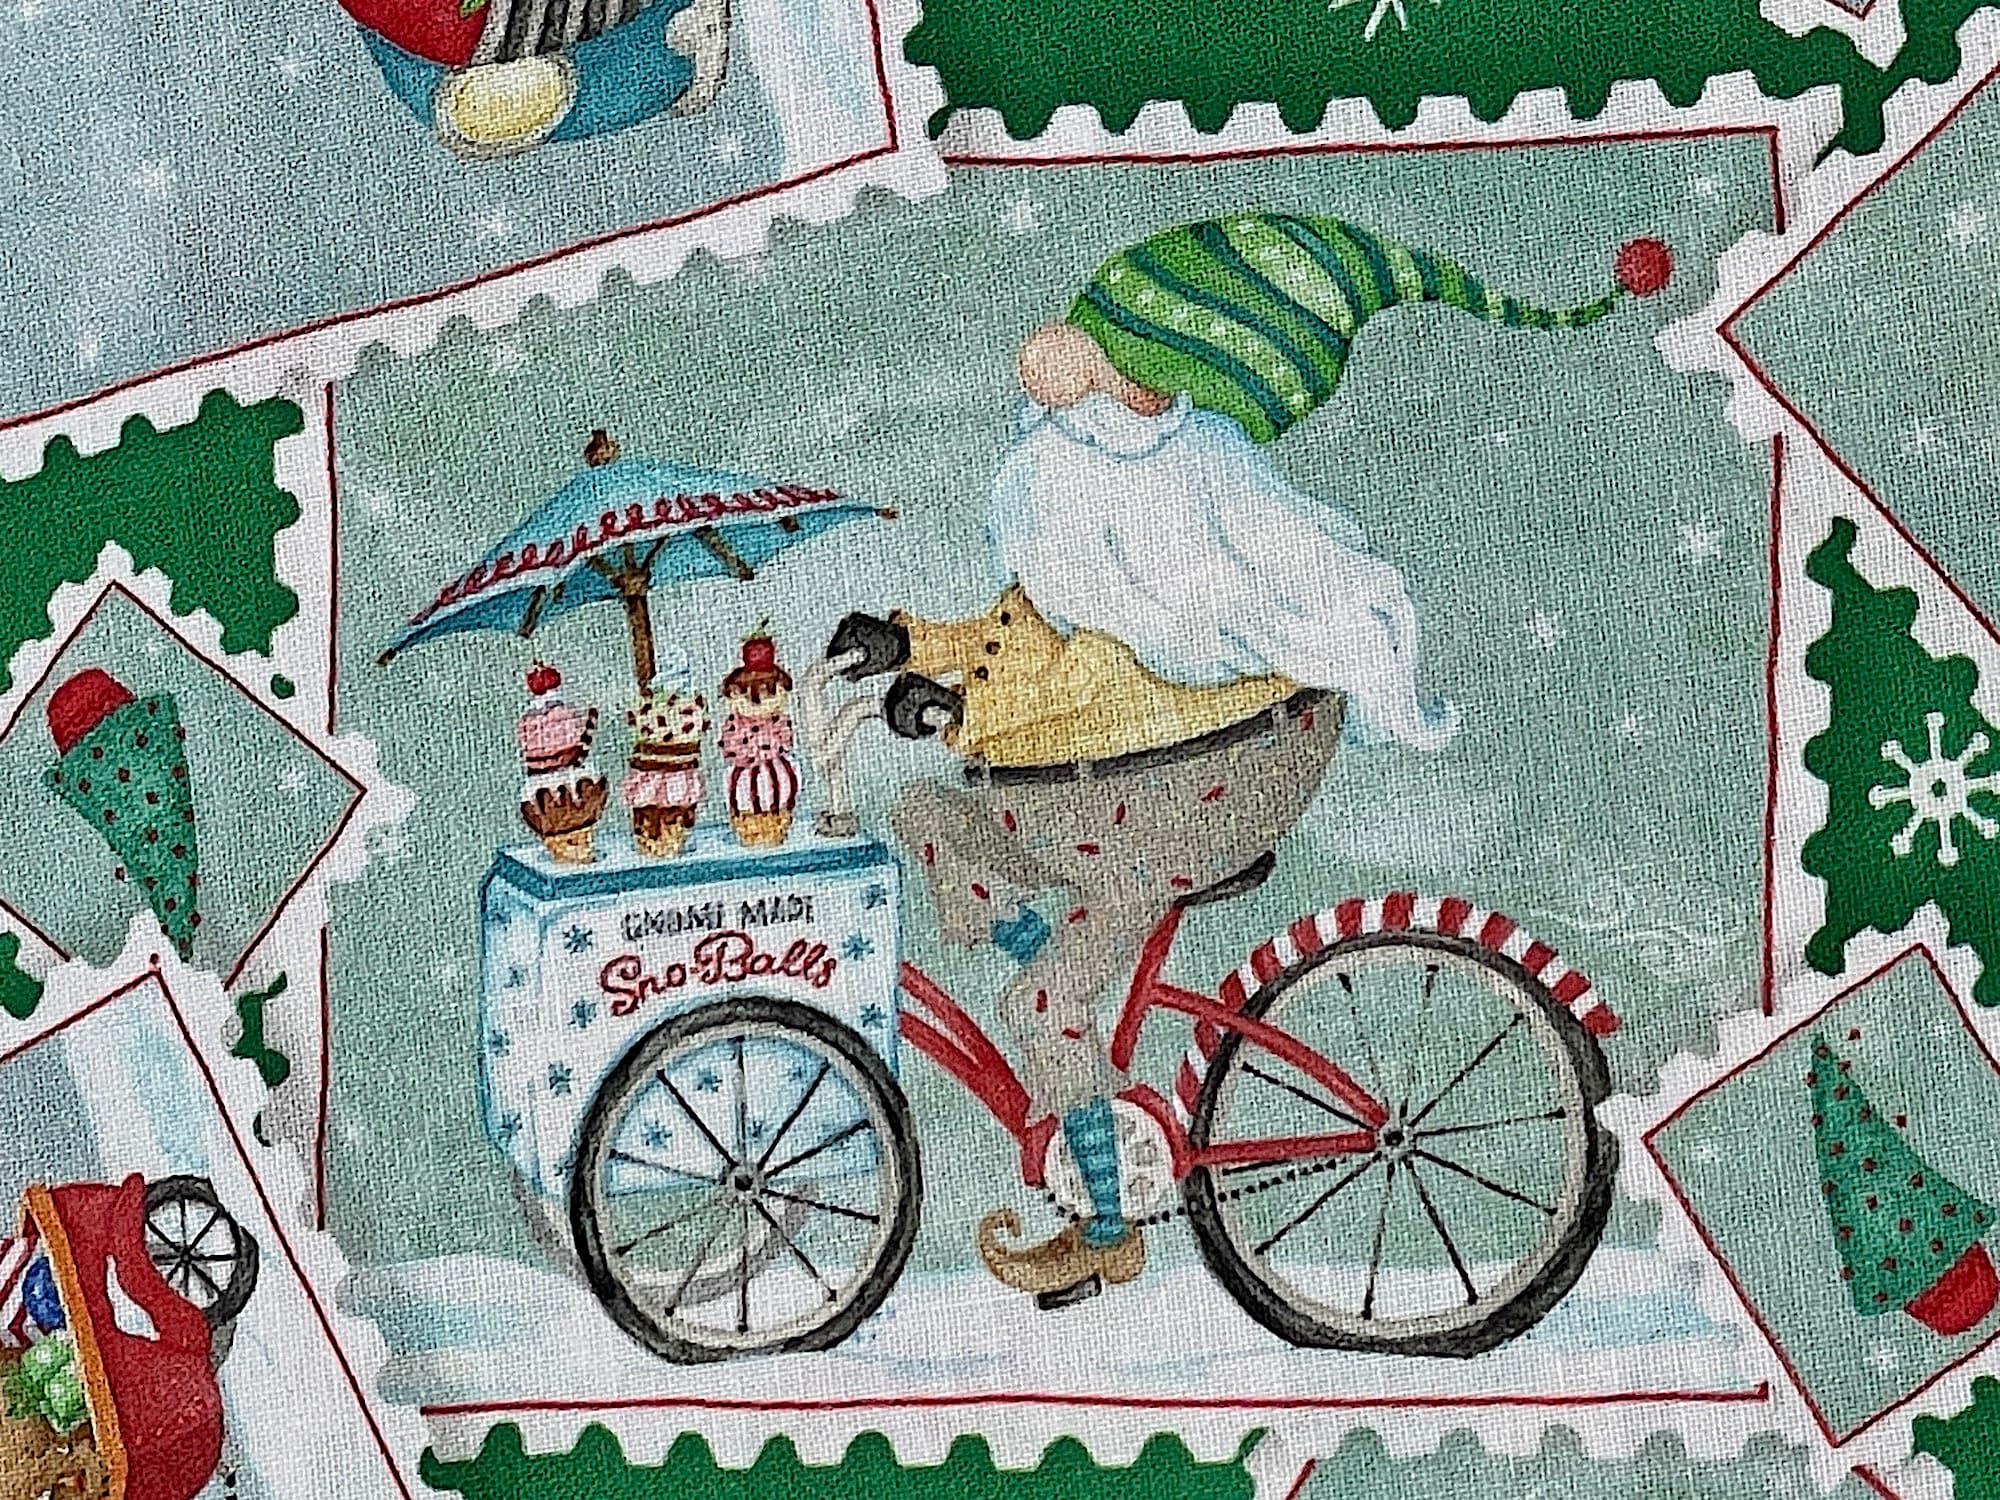 Santa gnome riding a ice cream bike.